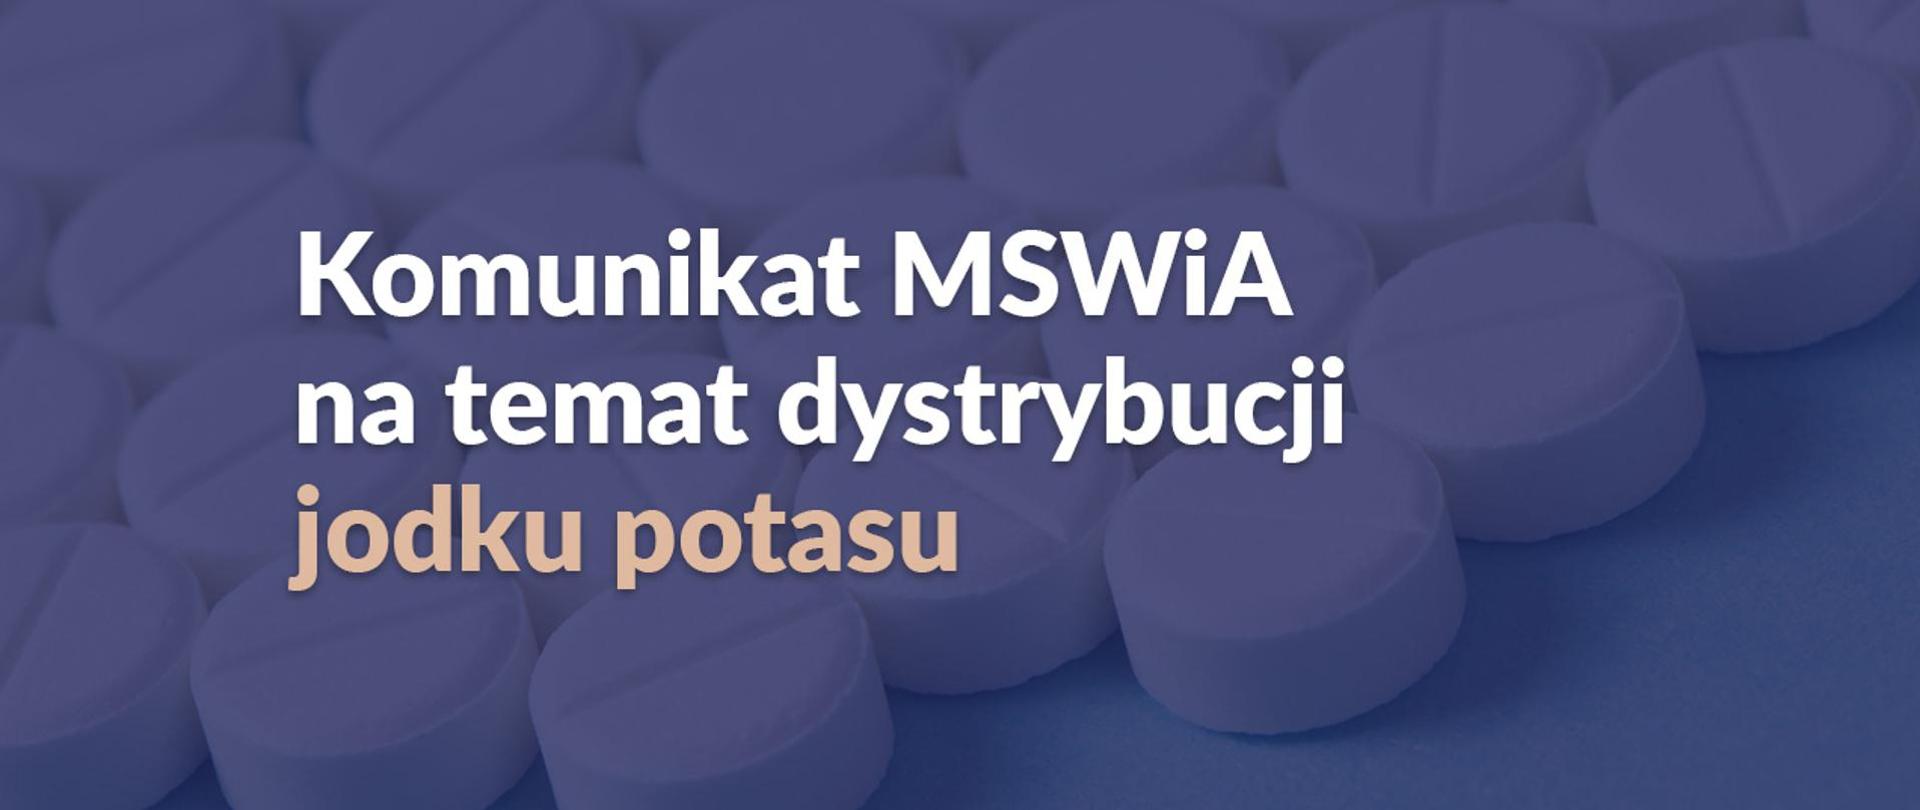 Niebieski baner z napisem Komunikat MSWiA na temat dystrybucji jodku potasu